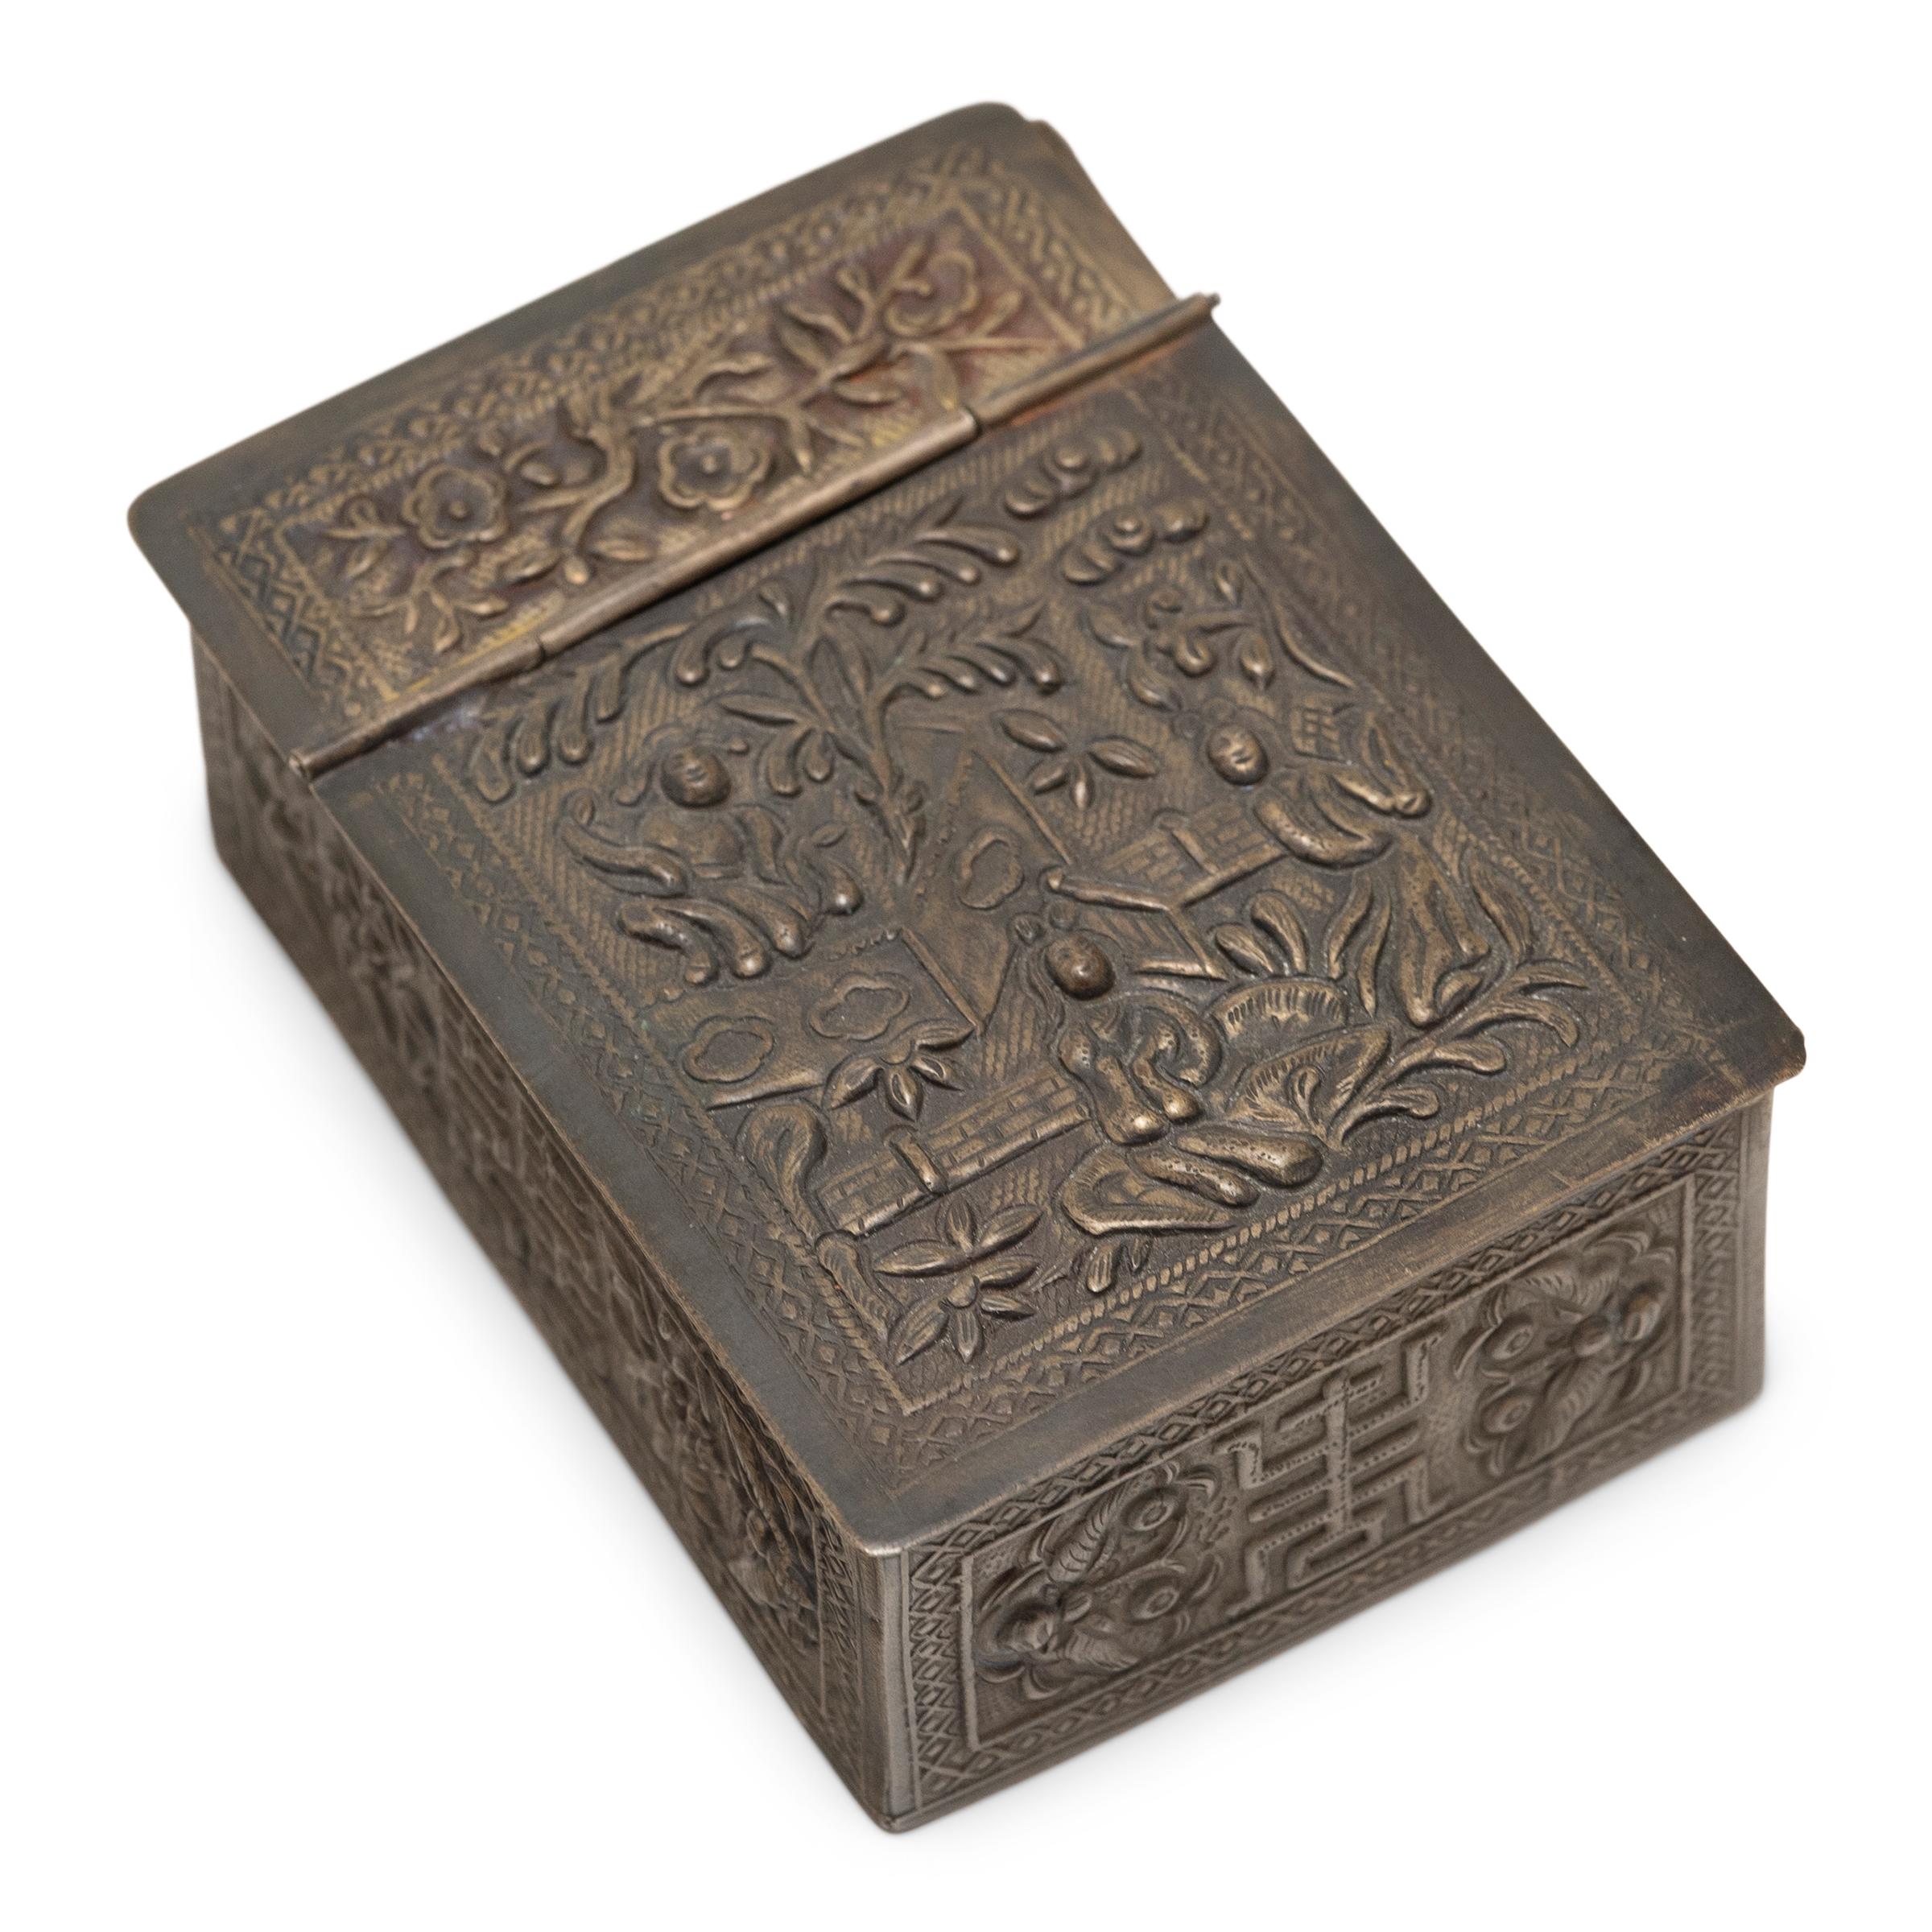 Dieser zierliche Reisespiegel stammt aus dem frühen 20. Jahrhundert und hat einen Metallrahmen, der mit einem Allover-Repoussé-Dekor verziert ist. Der nach dem Vorbild der Eitelkeitskästen der Qing-Dynastie gestaltete Deckel lässt sich nach oben